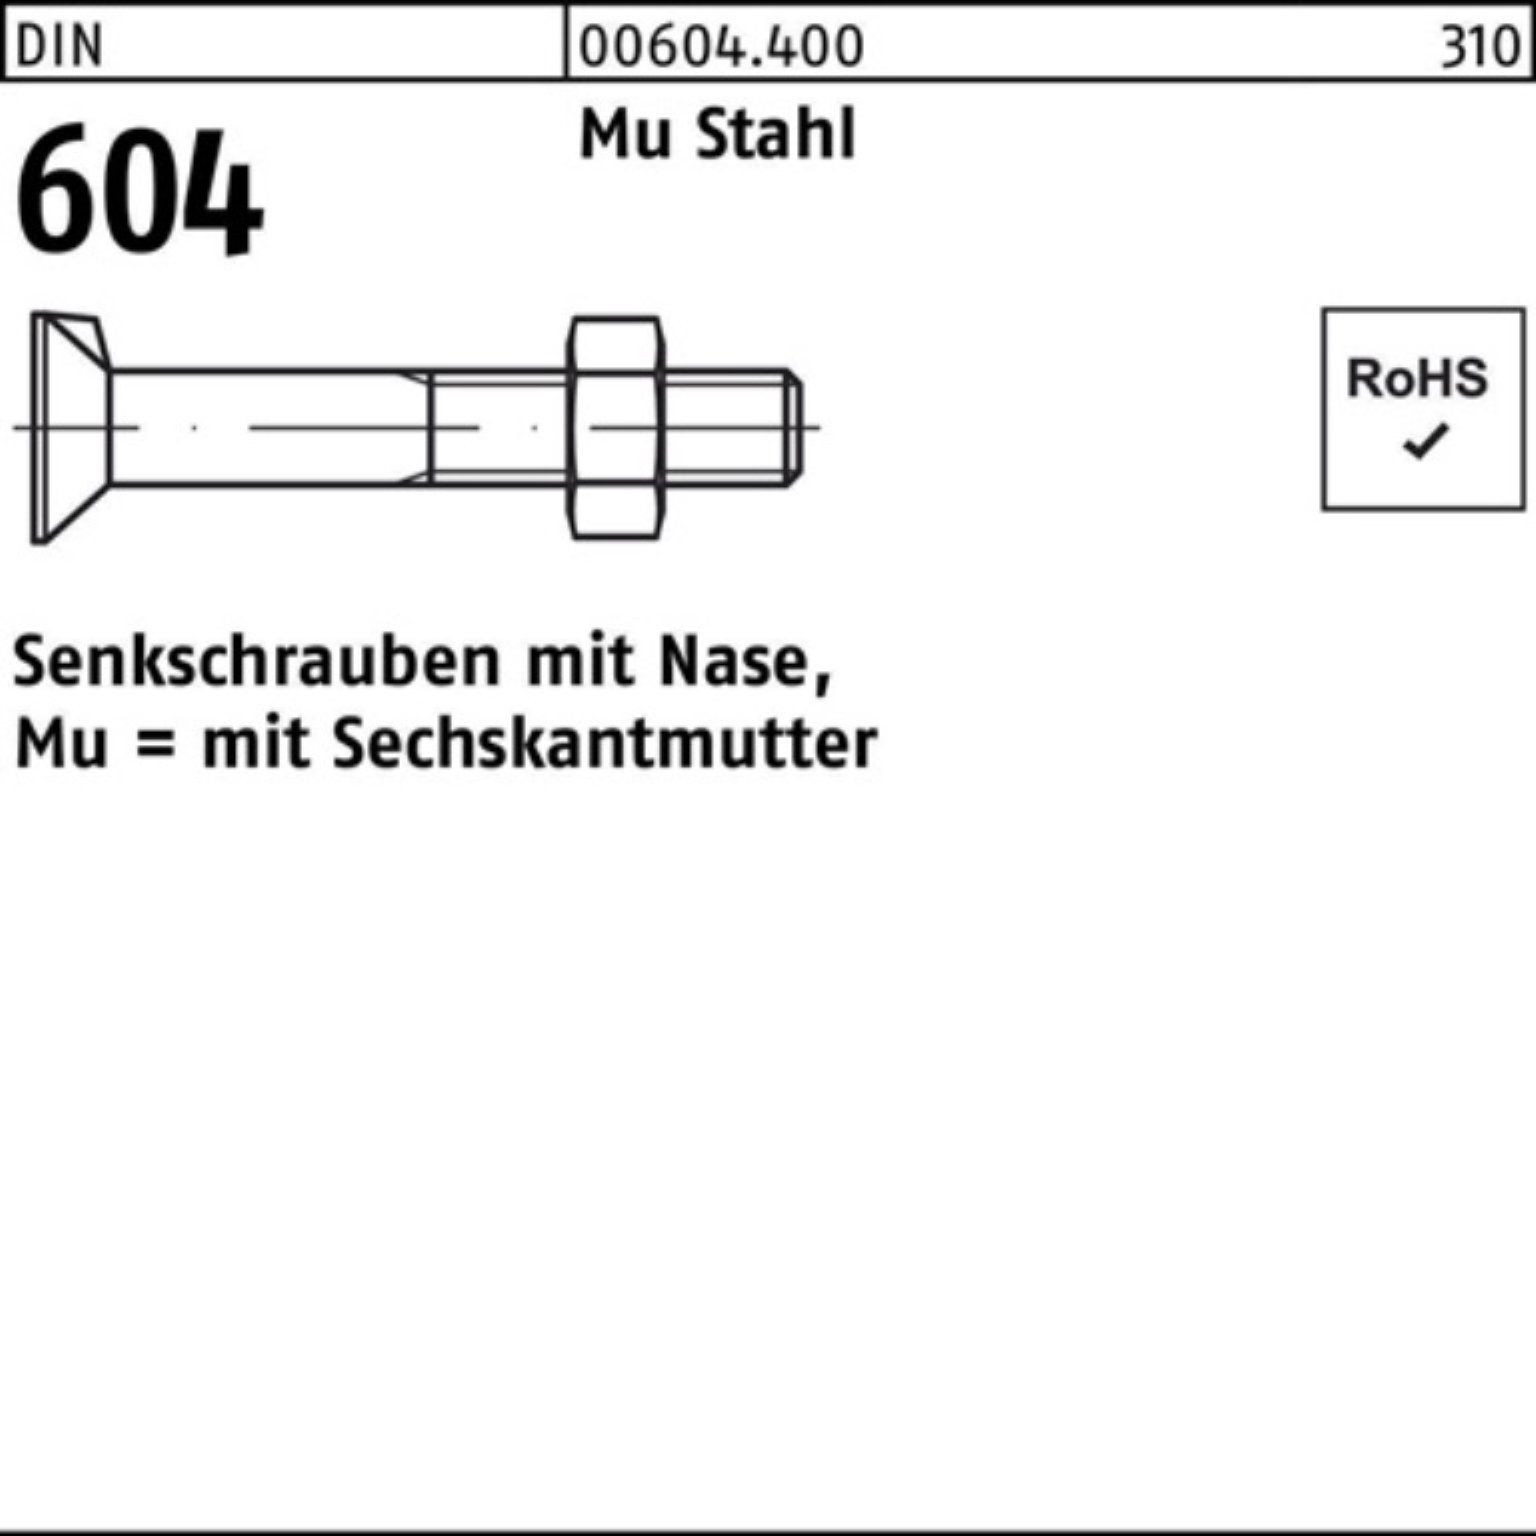 Reyher Senkschraube 200er Pack M8x Nase/6-ktmutter 4.6 604 Stahl Senkschraube 70 20 DIN Mu